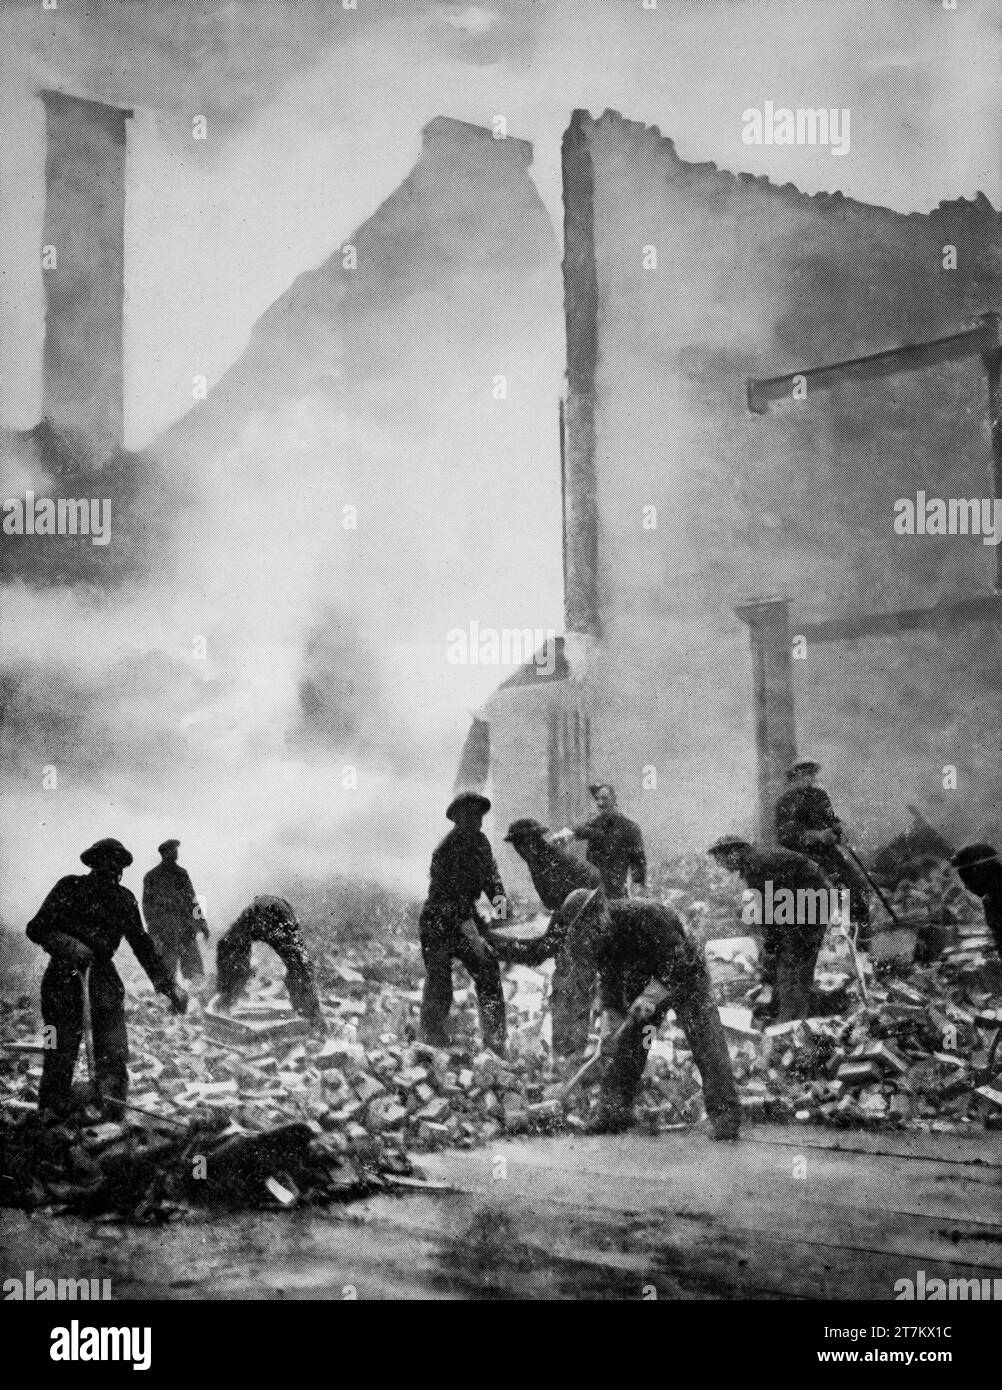 Les membres du Pioneer corps ont déblayé les décombres et endommagé les rues de Londres à la suite des raids aériens de la Luftwaffe pendant la Seconde Guerre mondiale en janvier 1941. Banque D'Images